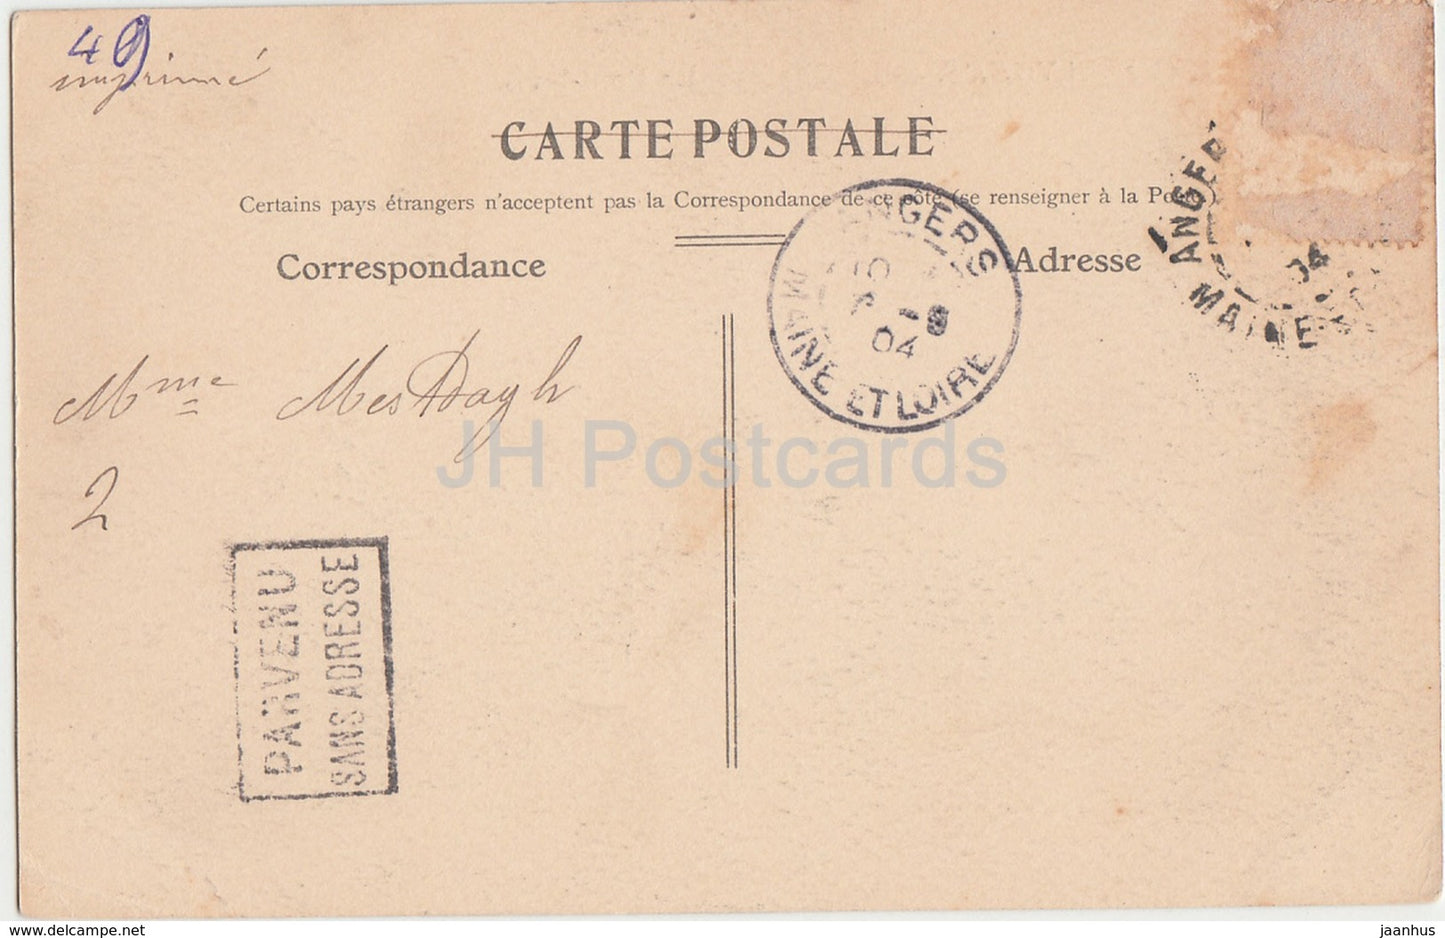 Angers - Le Chateau - Le Pont Levis - castle - 27 - 1904 - old postcard - France - used